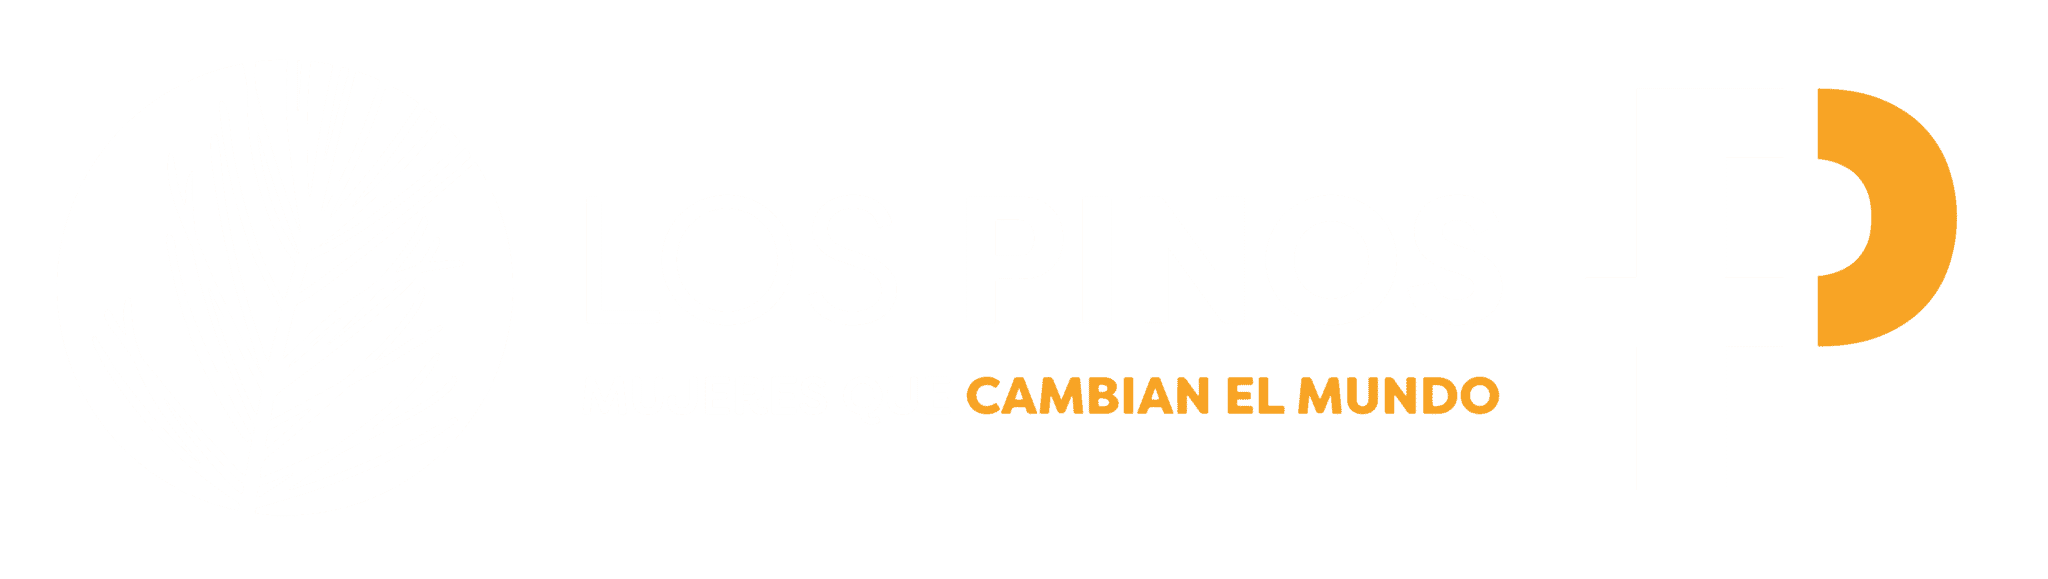 Visita Cristian Conen - Colegio Los Pinos